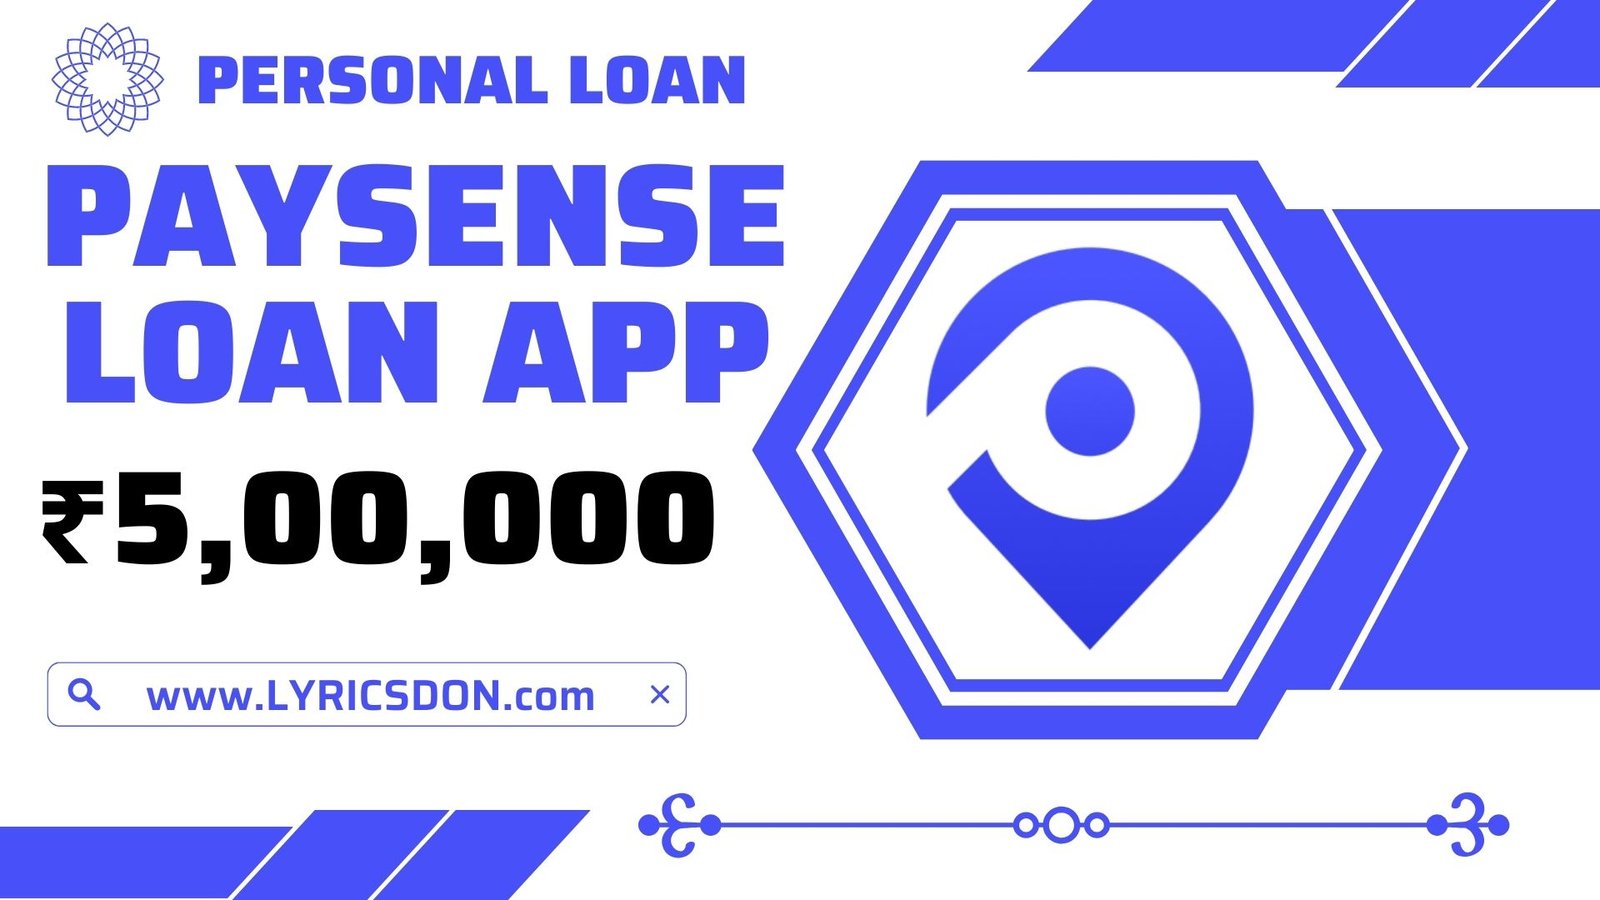 PaySense Loan App Loan Amount